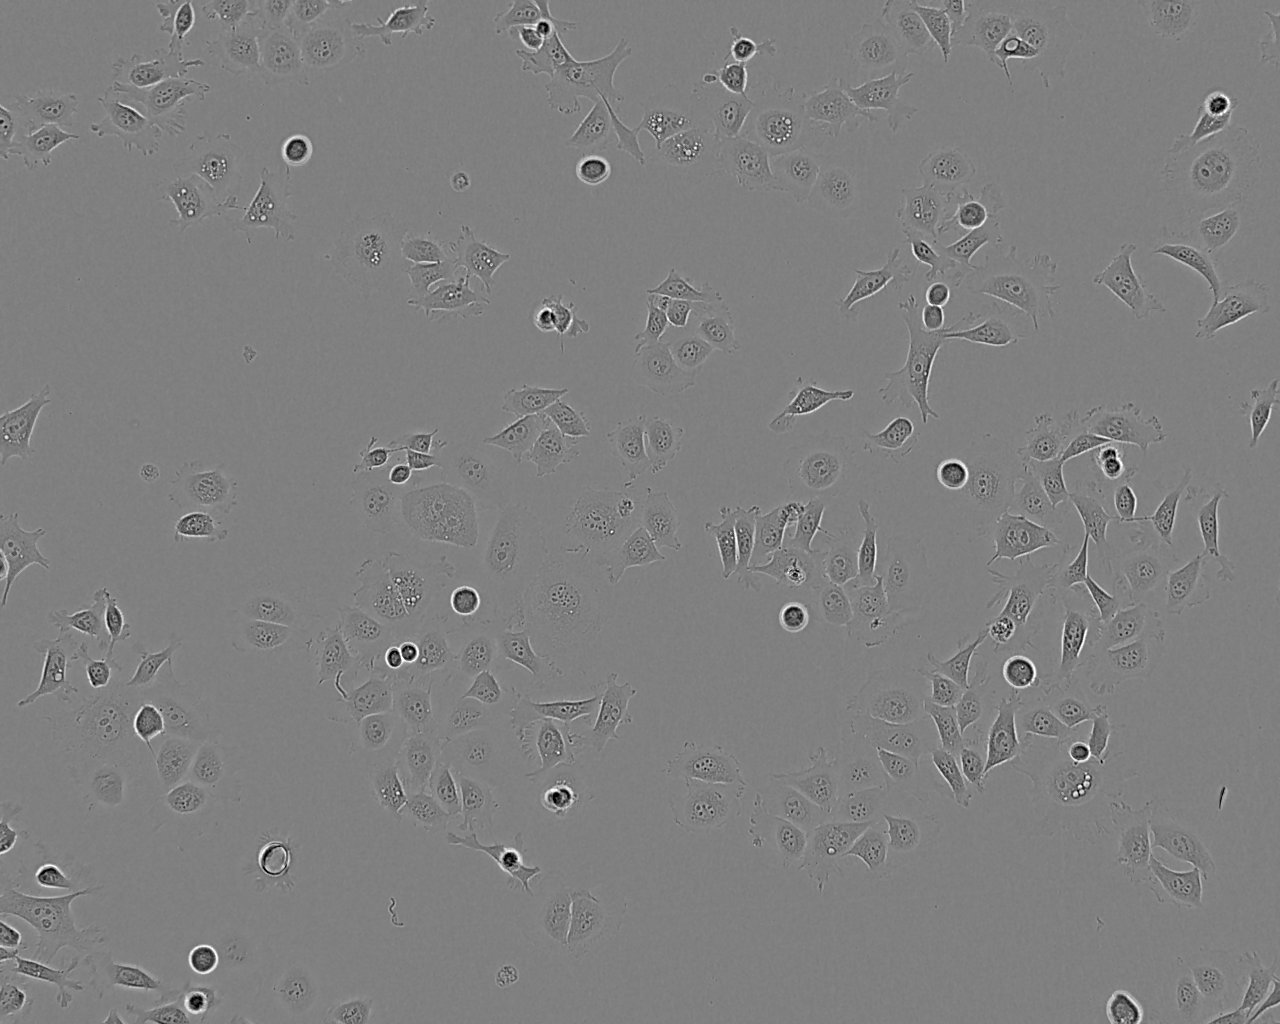 TE-14 Cells(赠送Str鉴定报告)|人食管癌细胞